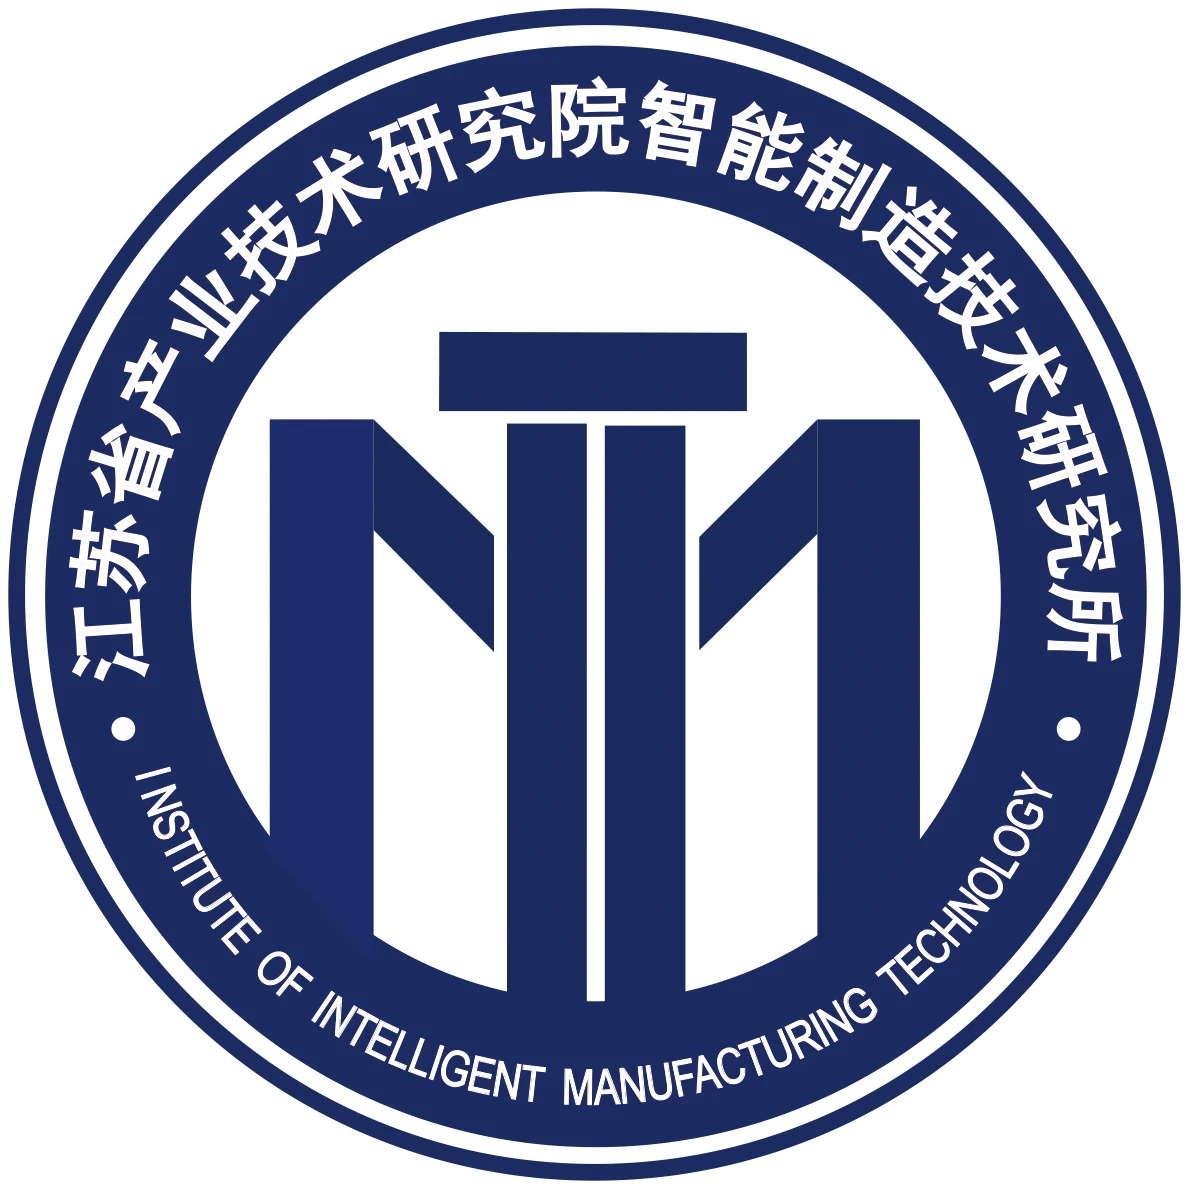 Jiangsu Jitri Intelligent Manufacturing Technology Institute Co., Ltd.